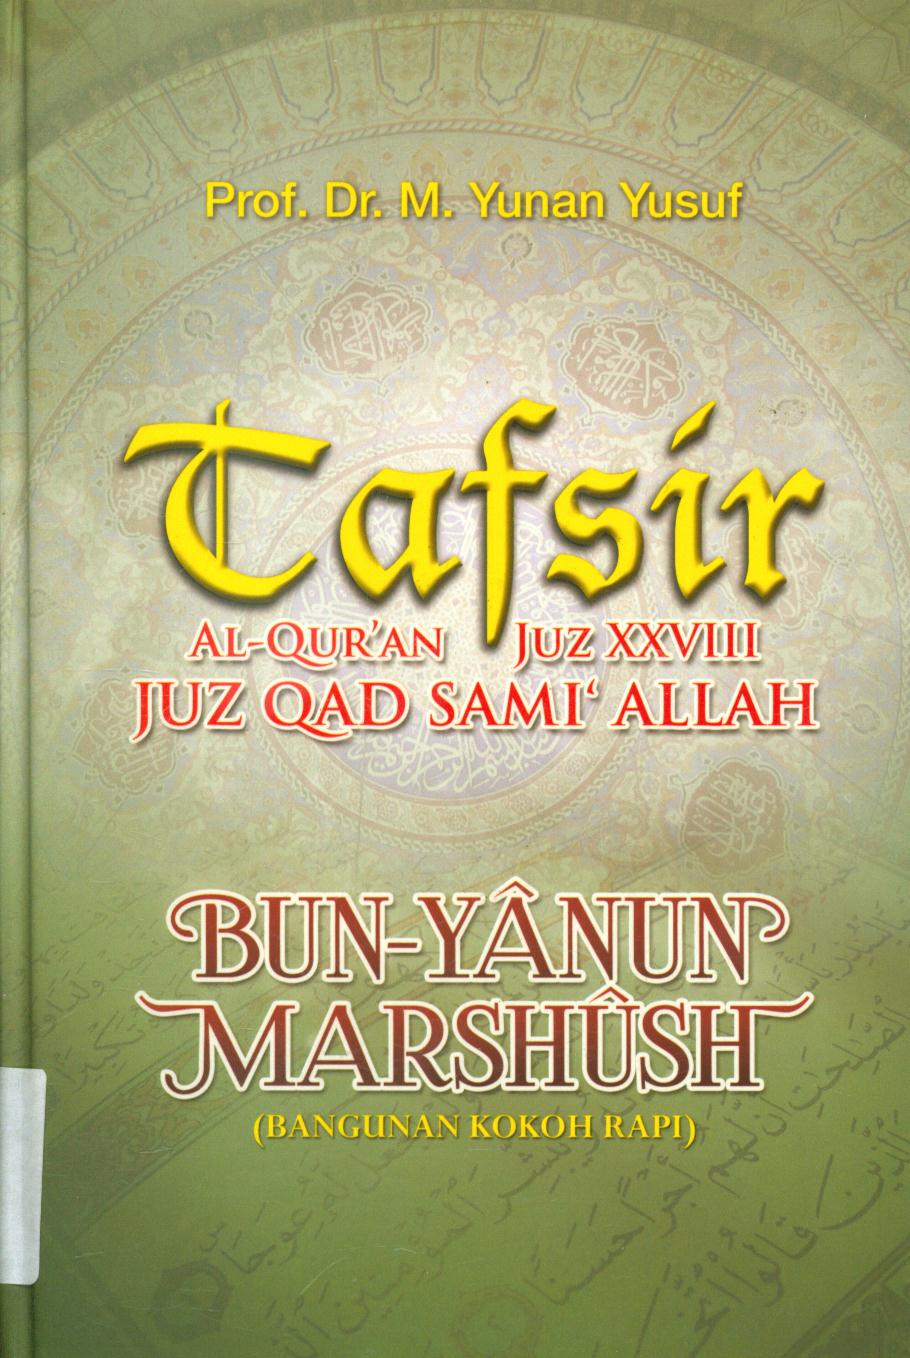 Tafsir :  Al-Qur'an juz xxviii juz Qad sami' Allah